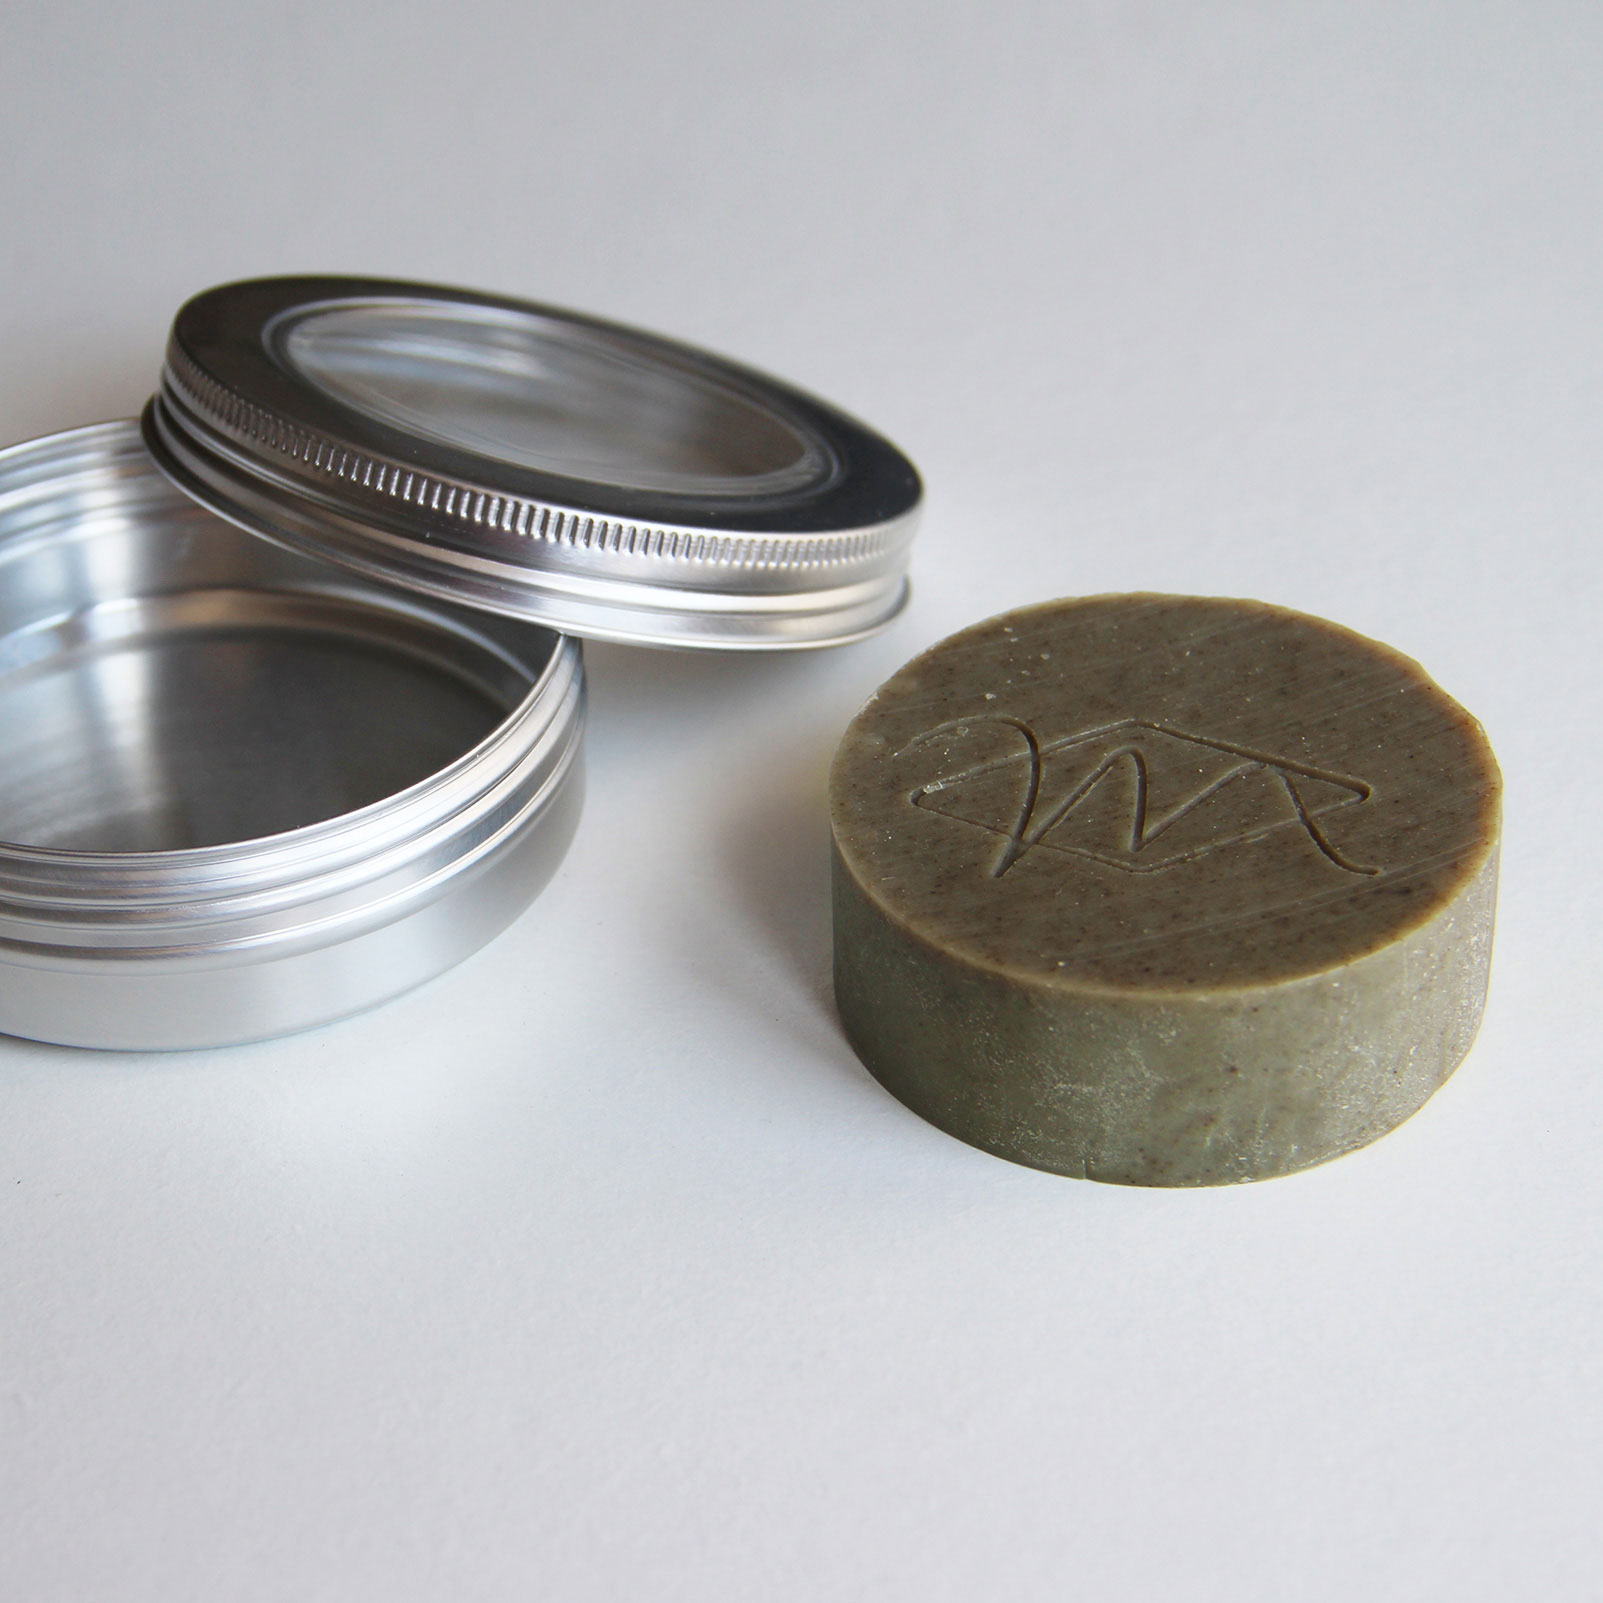 Boîte à savon ronde Tadé en aluminium brossé pour savon de rasage